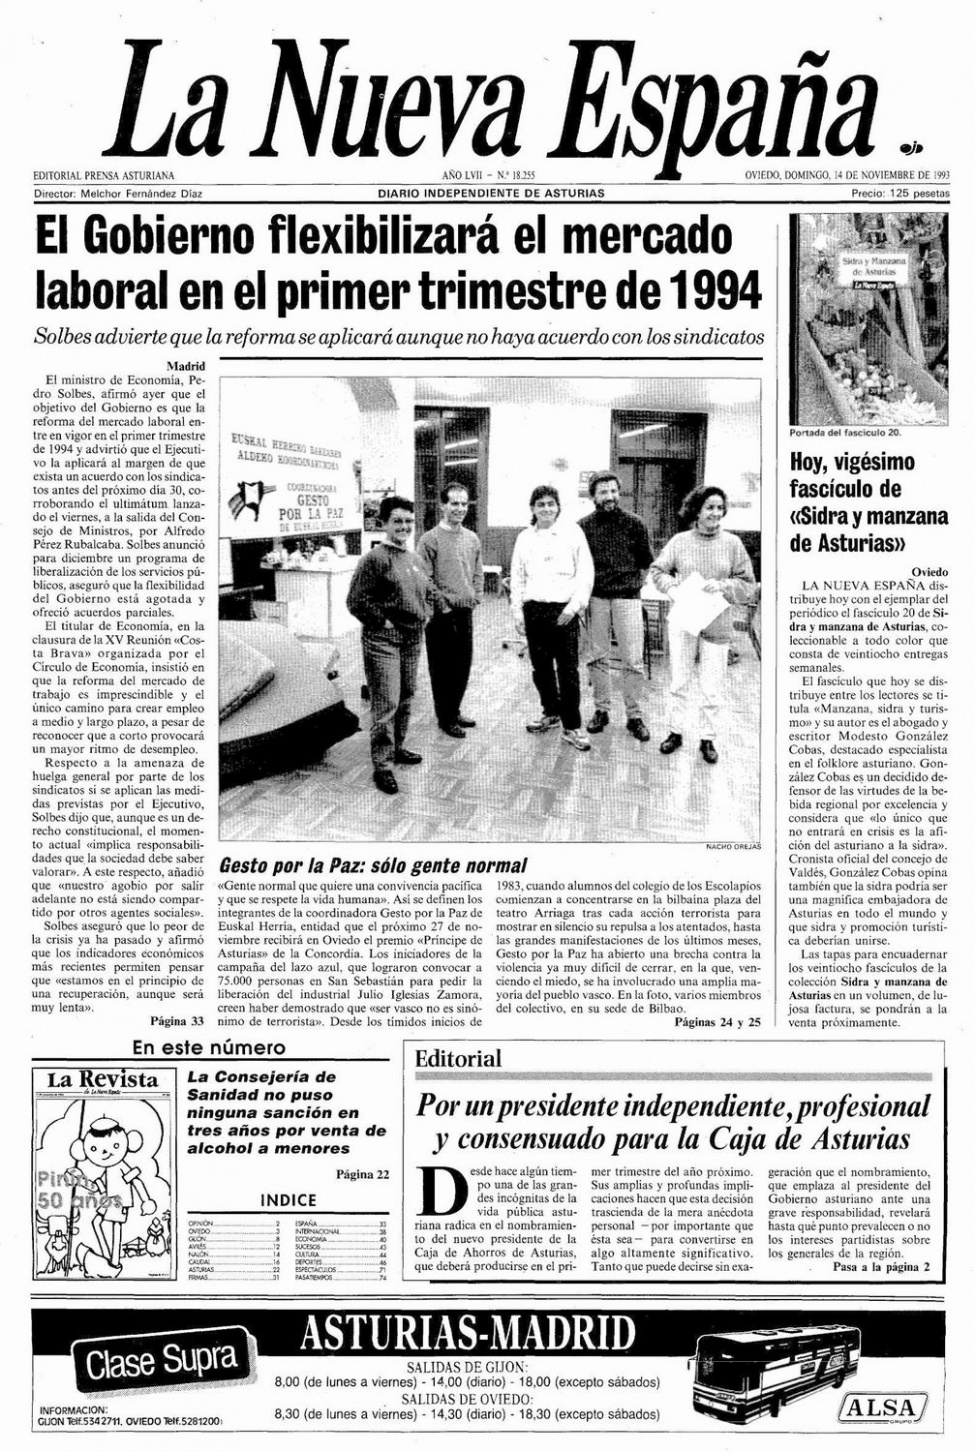 Portada del Domingo, 14 de Noviembre de 1993